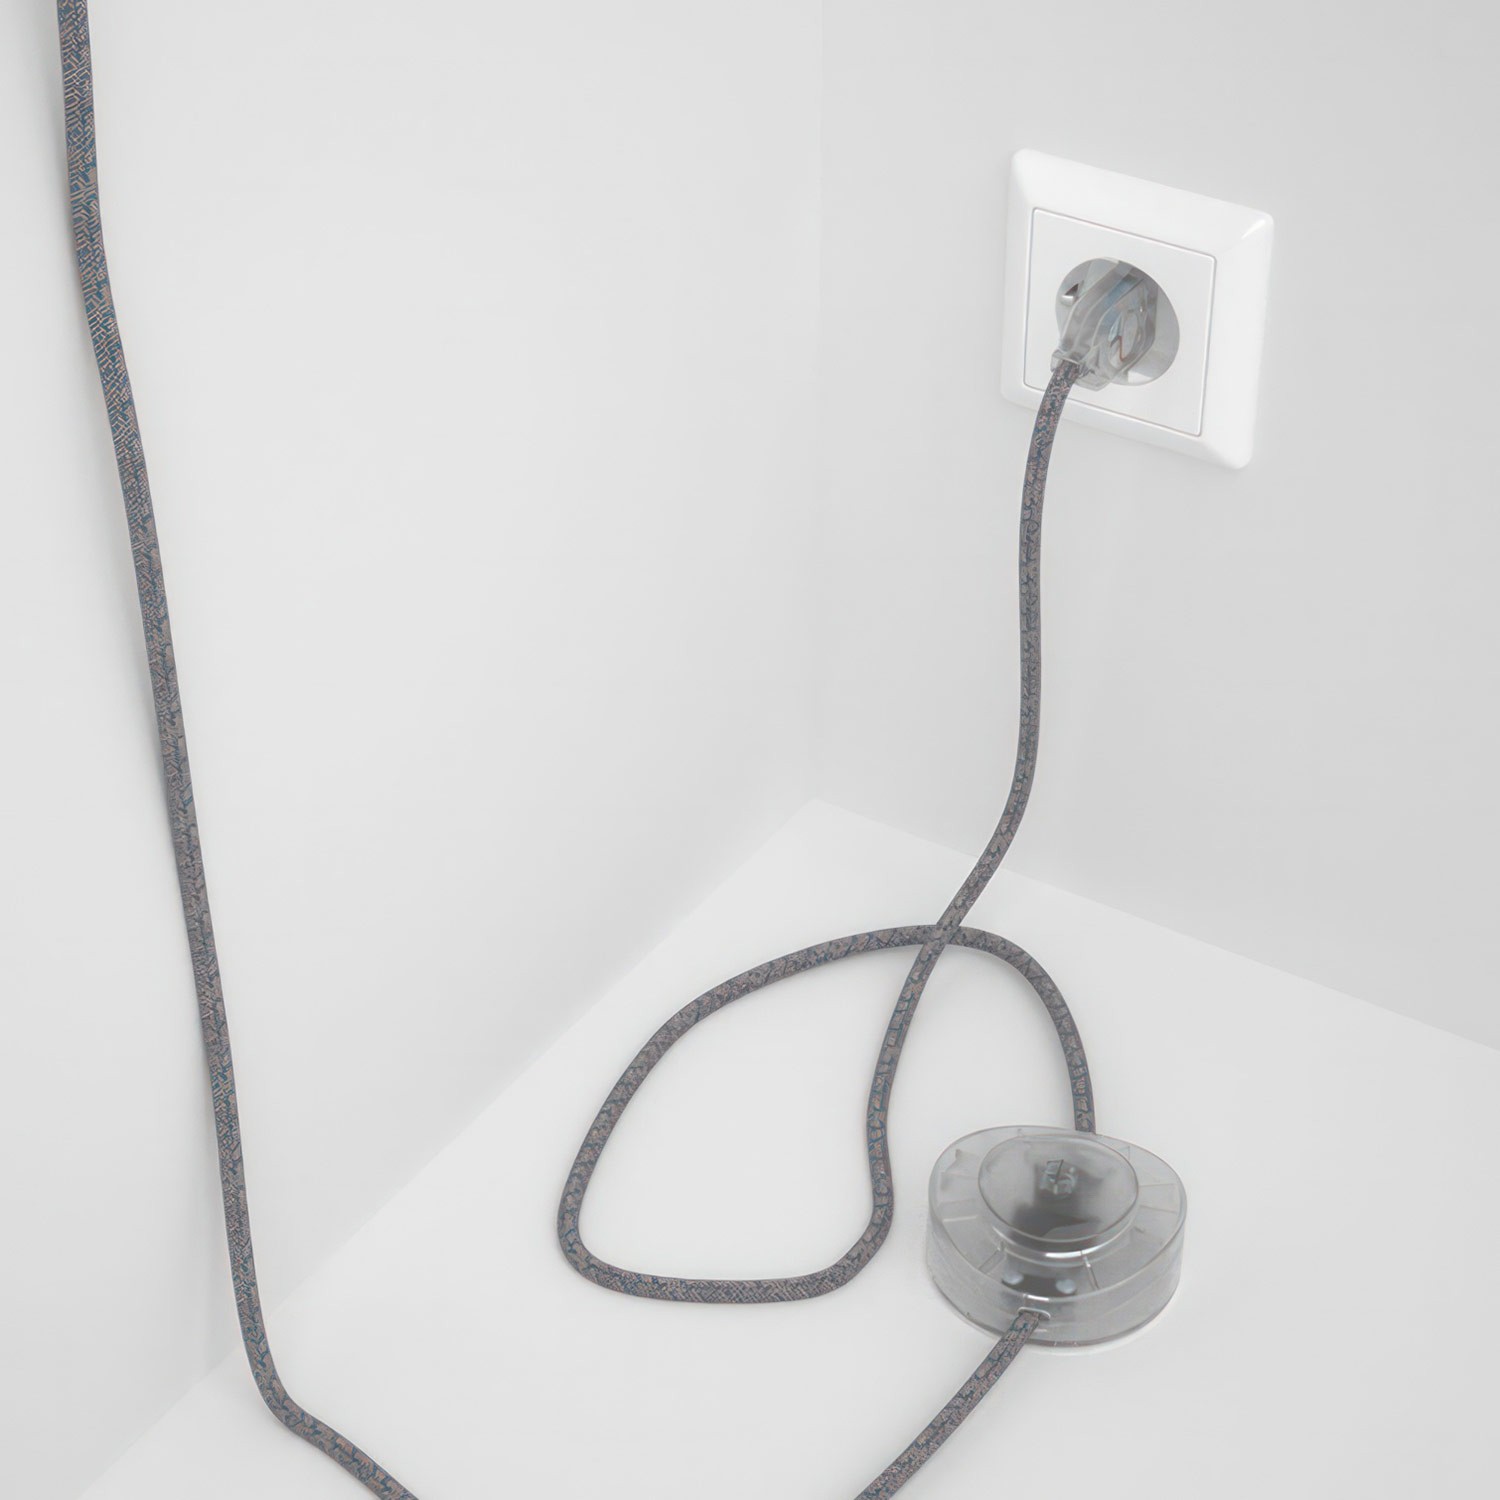 Cableado para lámpara de pie, cable RD65 Rombo Azul Steward 3 m. Elige tu el color de la clavija y del interruptor!